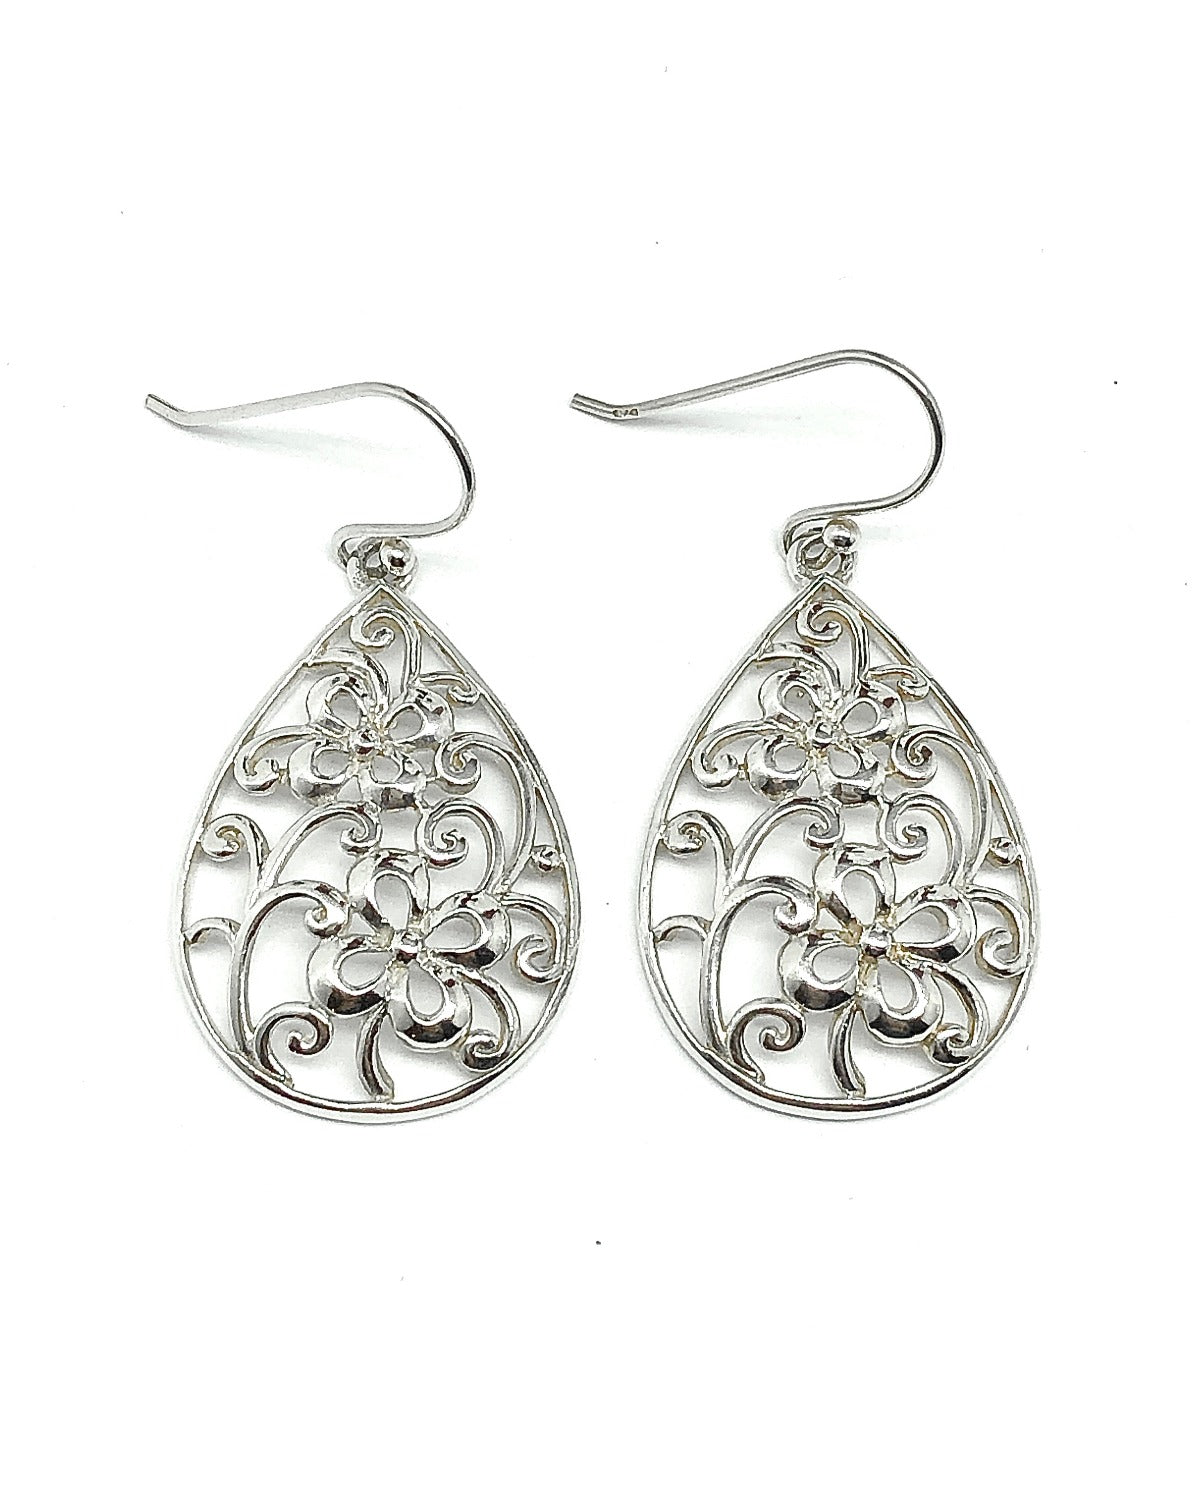 Blingschlingers - Sterling Silver Scrolling Cut-out Filigree Flower Teardrop Dangle Earrings